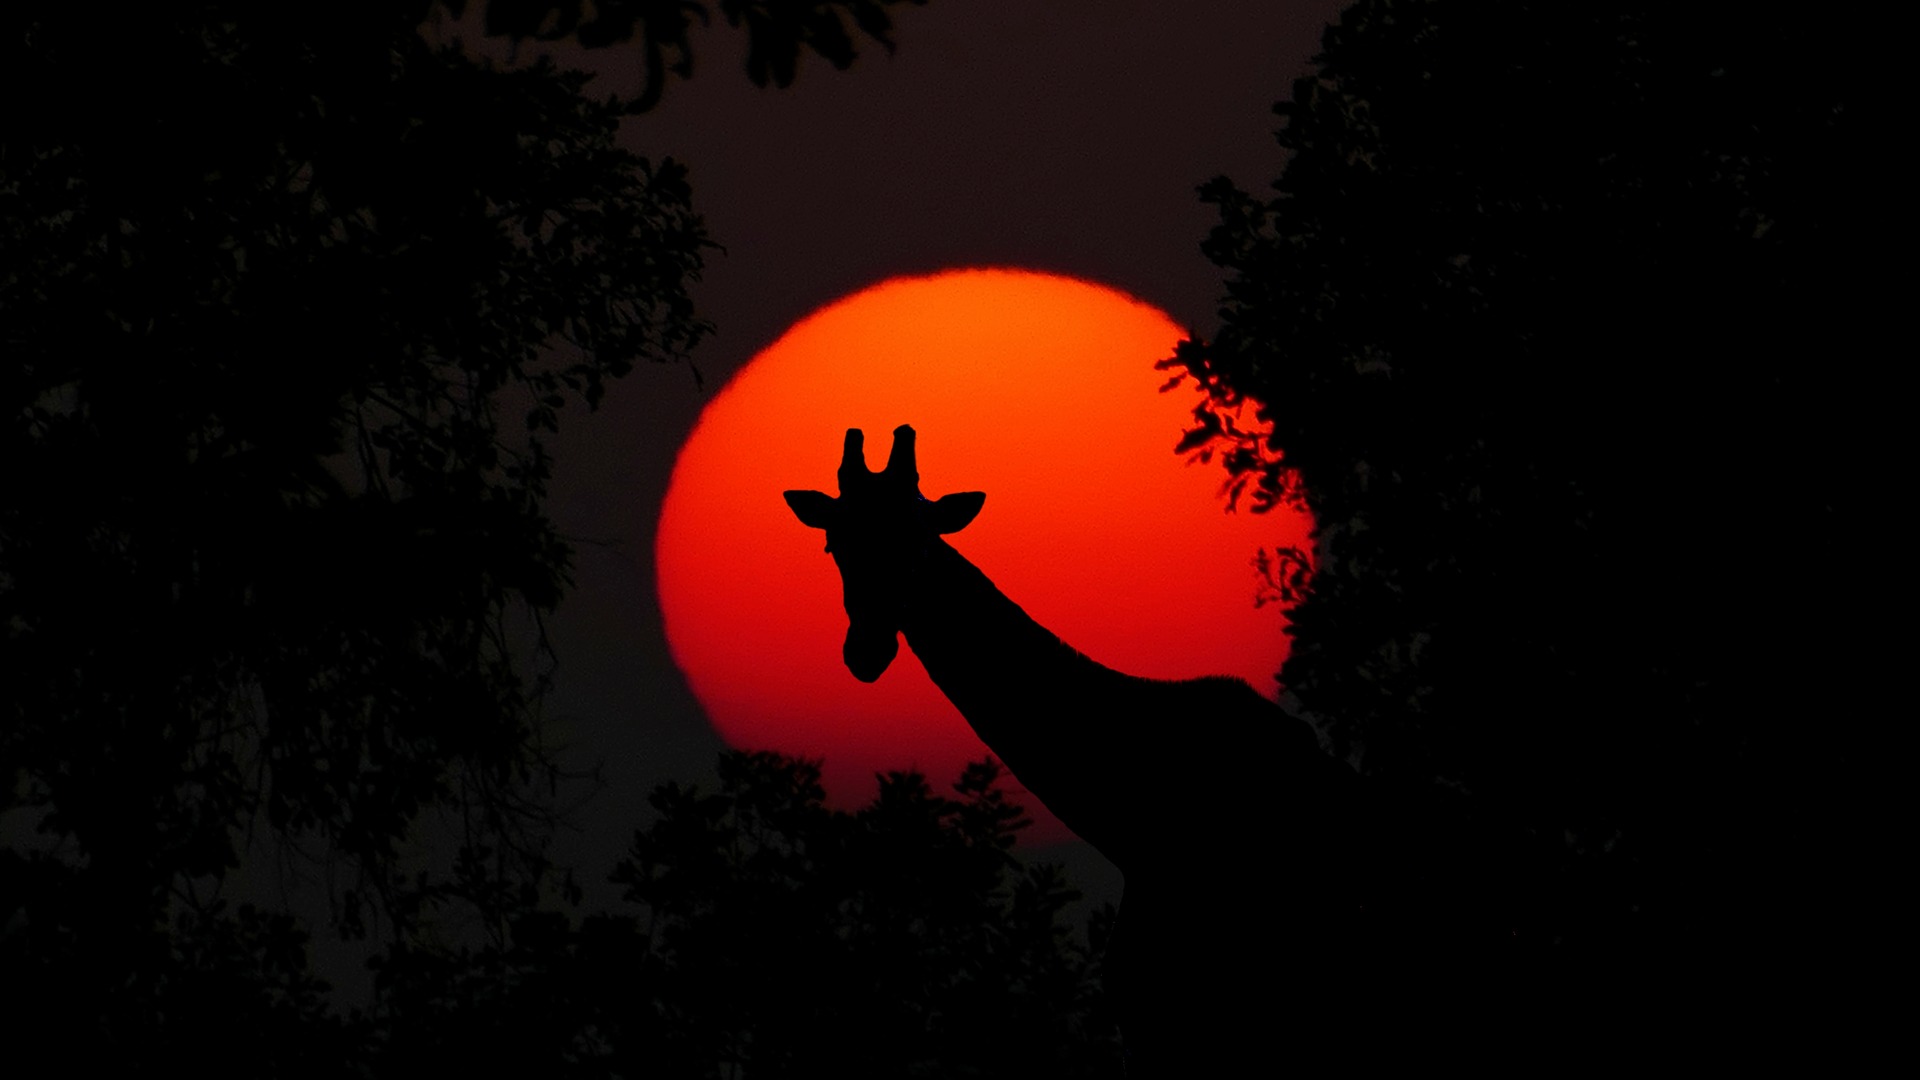 Giraffe and Setting Sun